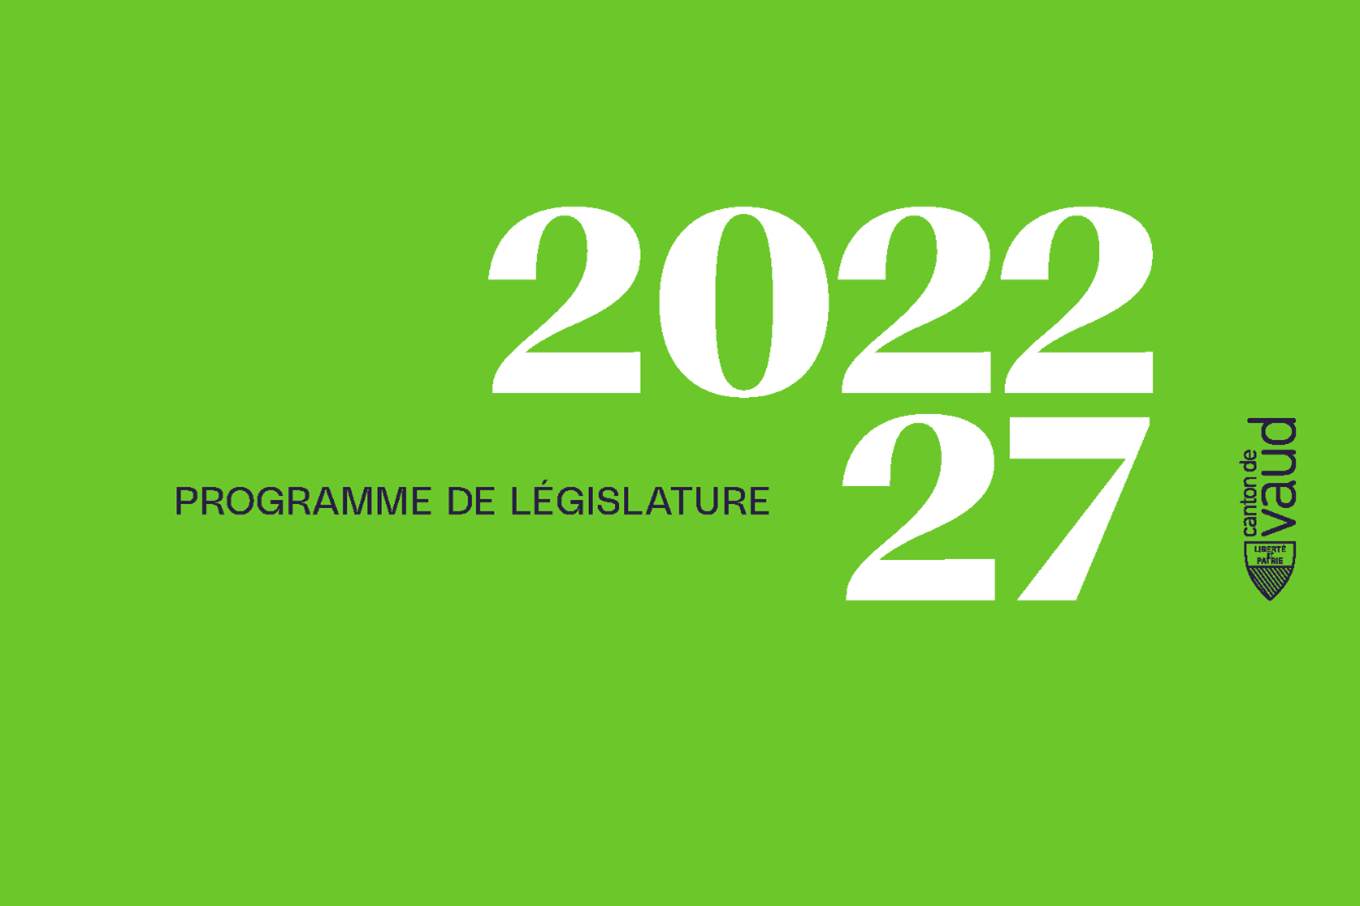 Première page du programme de législature 2022-2027